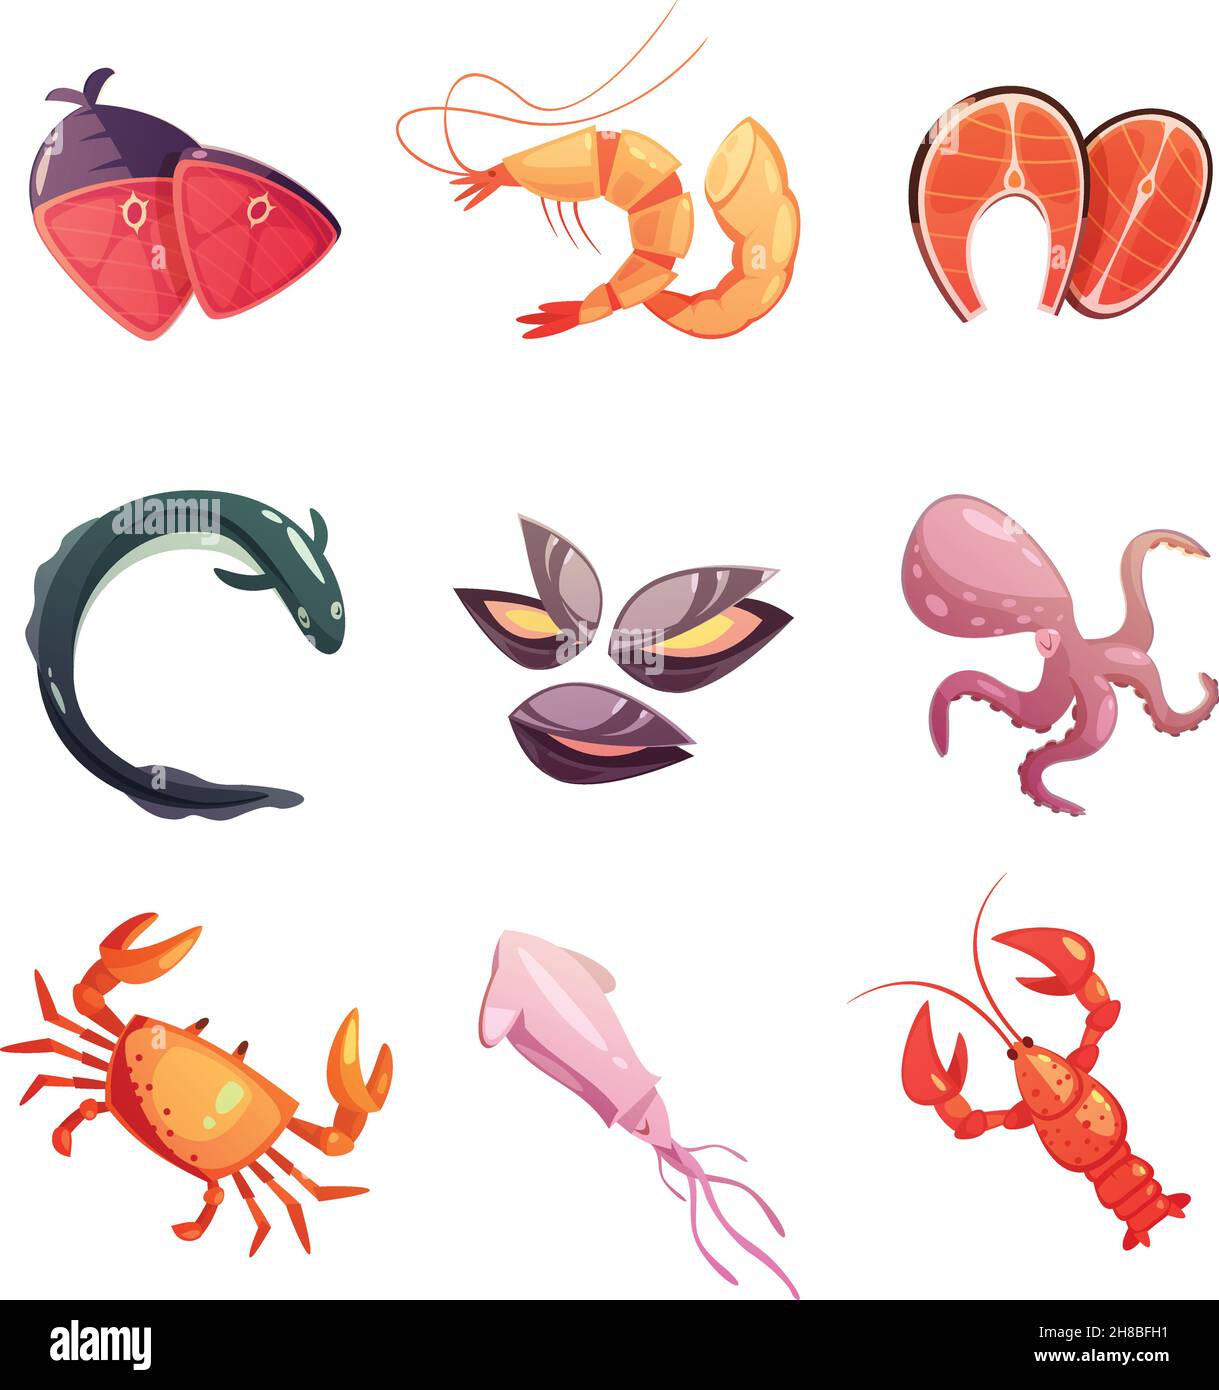 Bunte Meeresfrüchte Retro Cartoon flache Symbole mit Schalentieren gesetzt octopus Tintenfisch Austernaal und Steaks isoliert Vektor-Illustration Stock Vektor